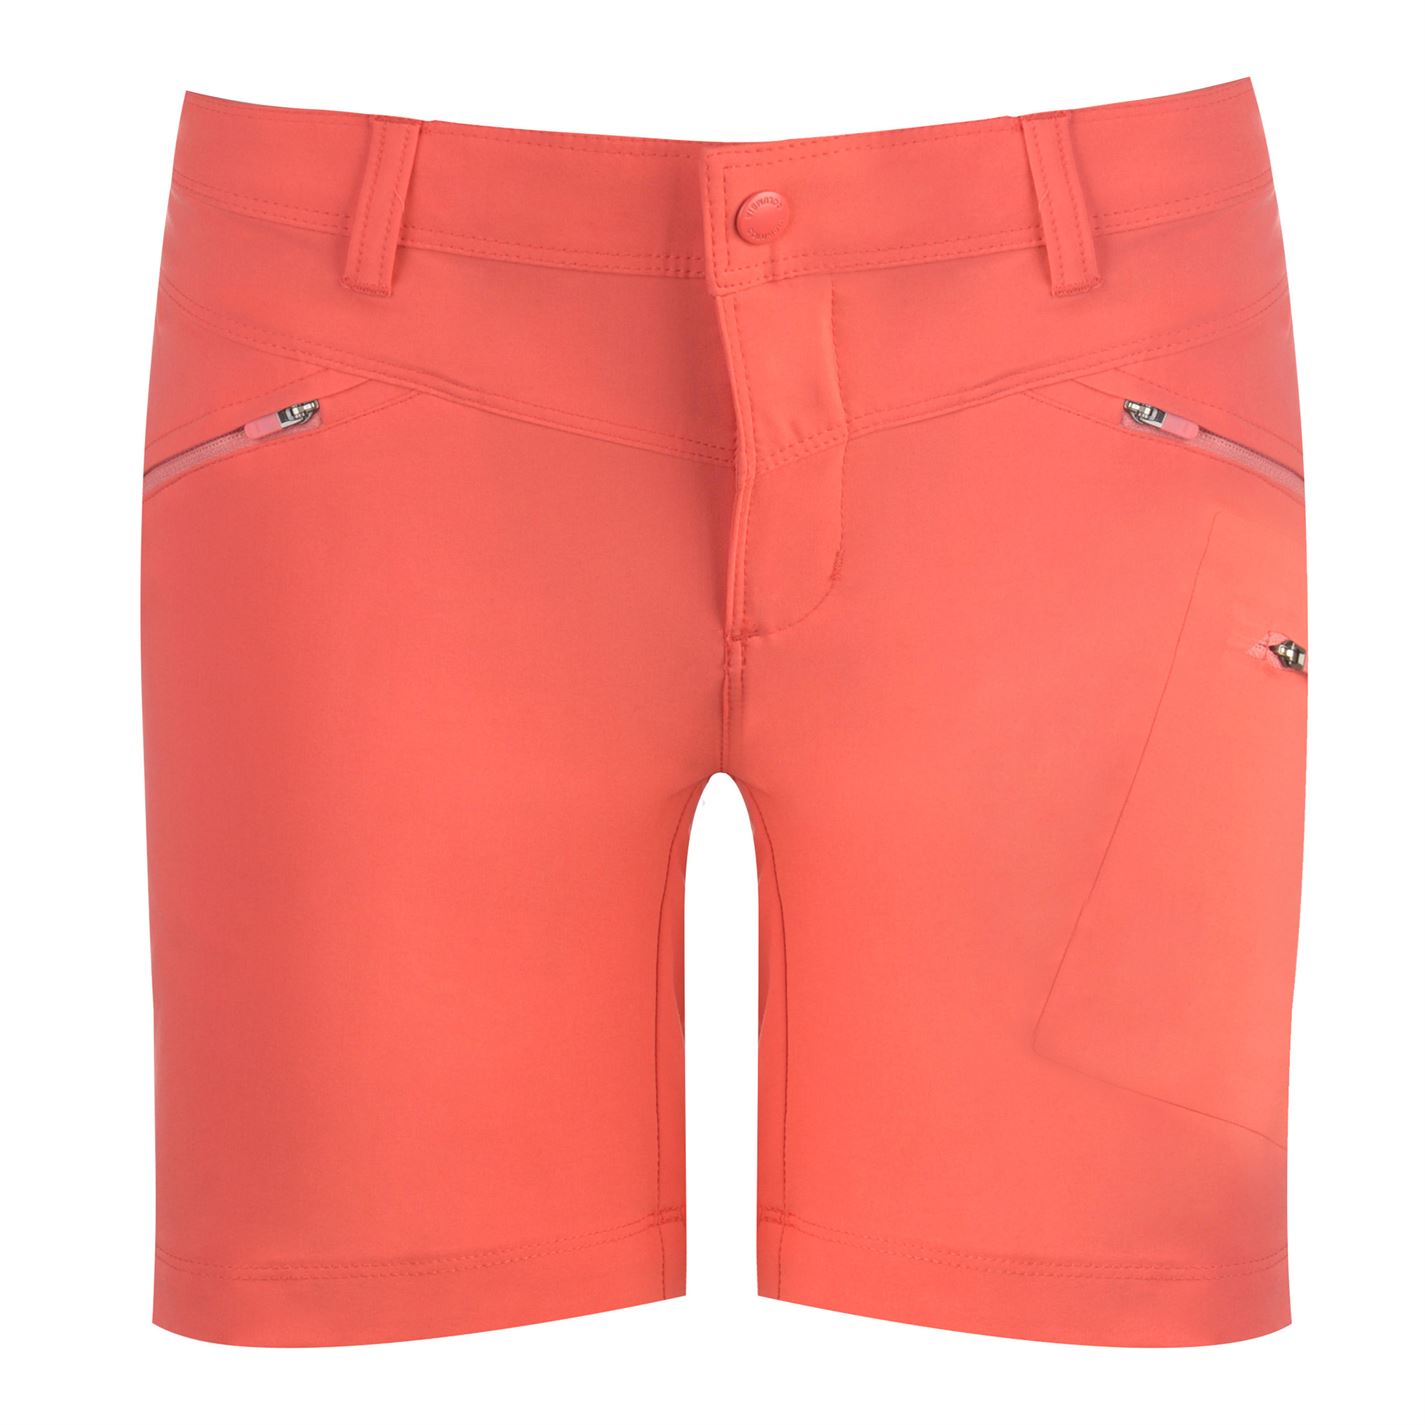 Pantaloni scurti Columbia Peak pentru Femei rosu coral